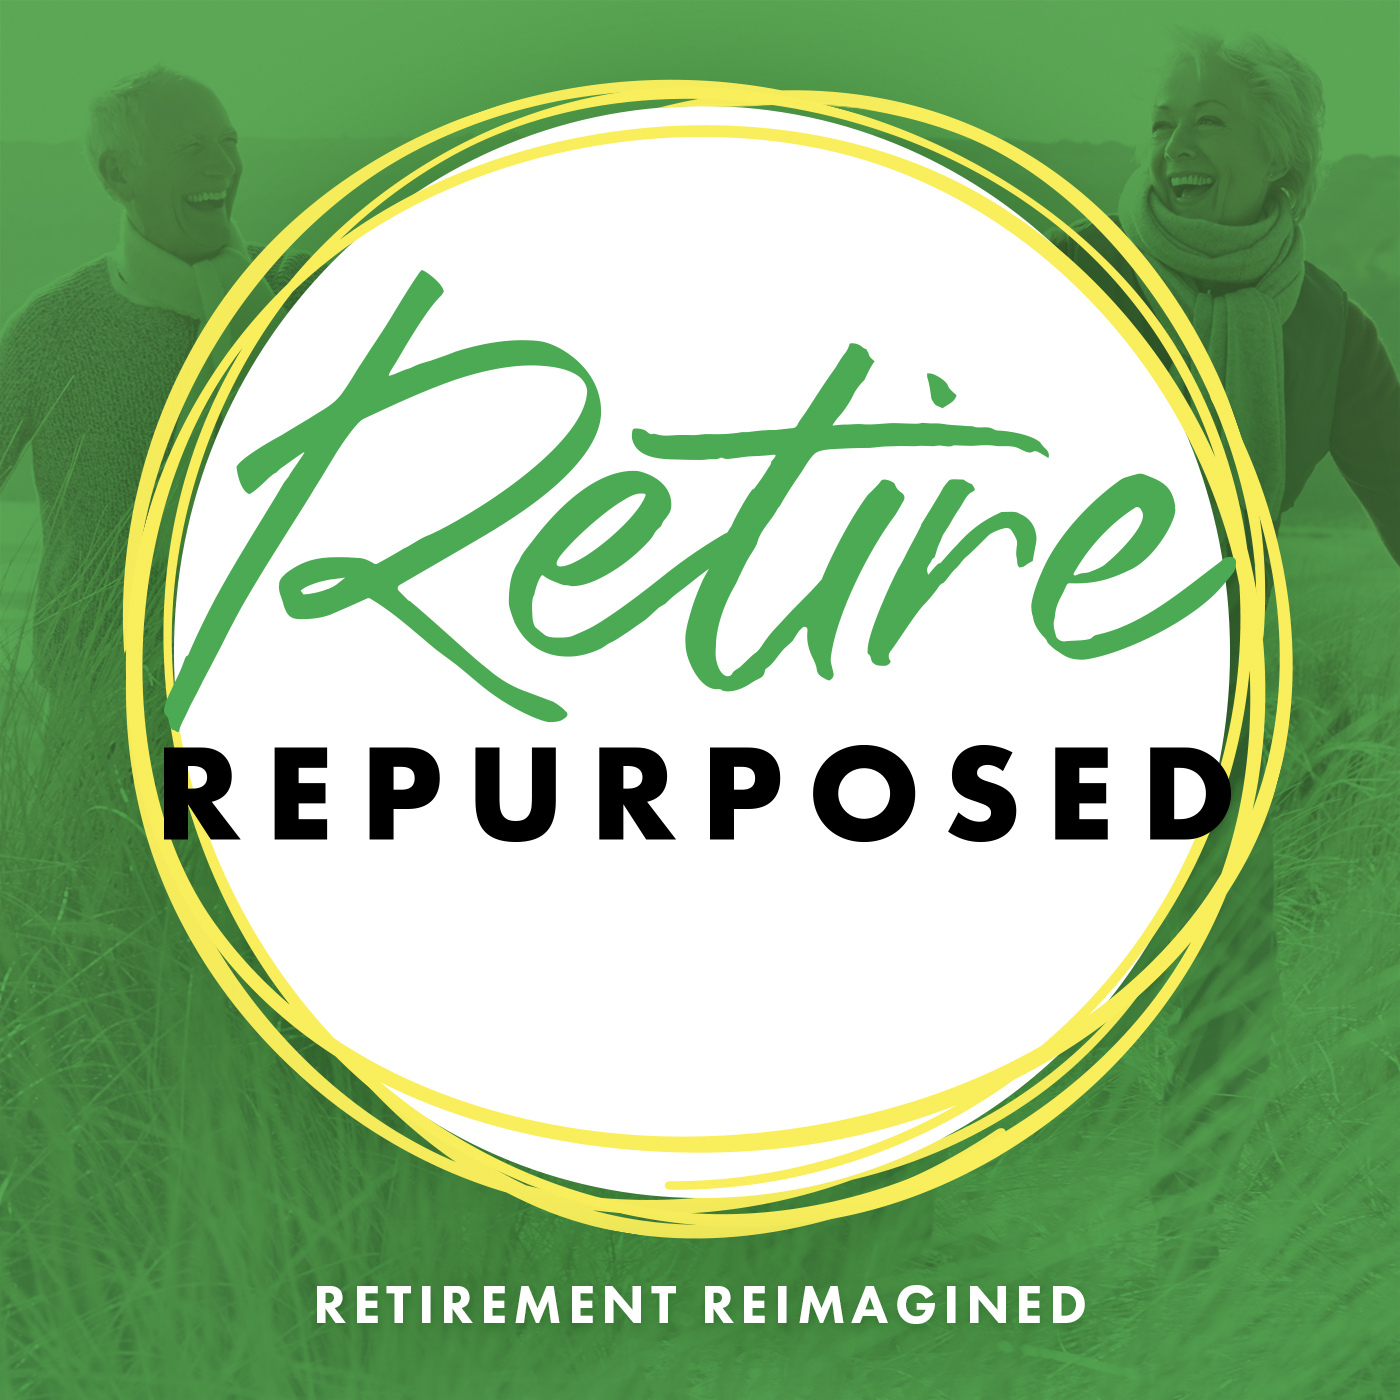 Dangers of Not Retiring Repurposed: Everyone Loses